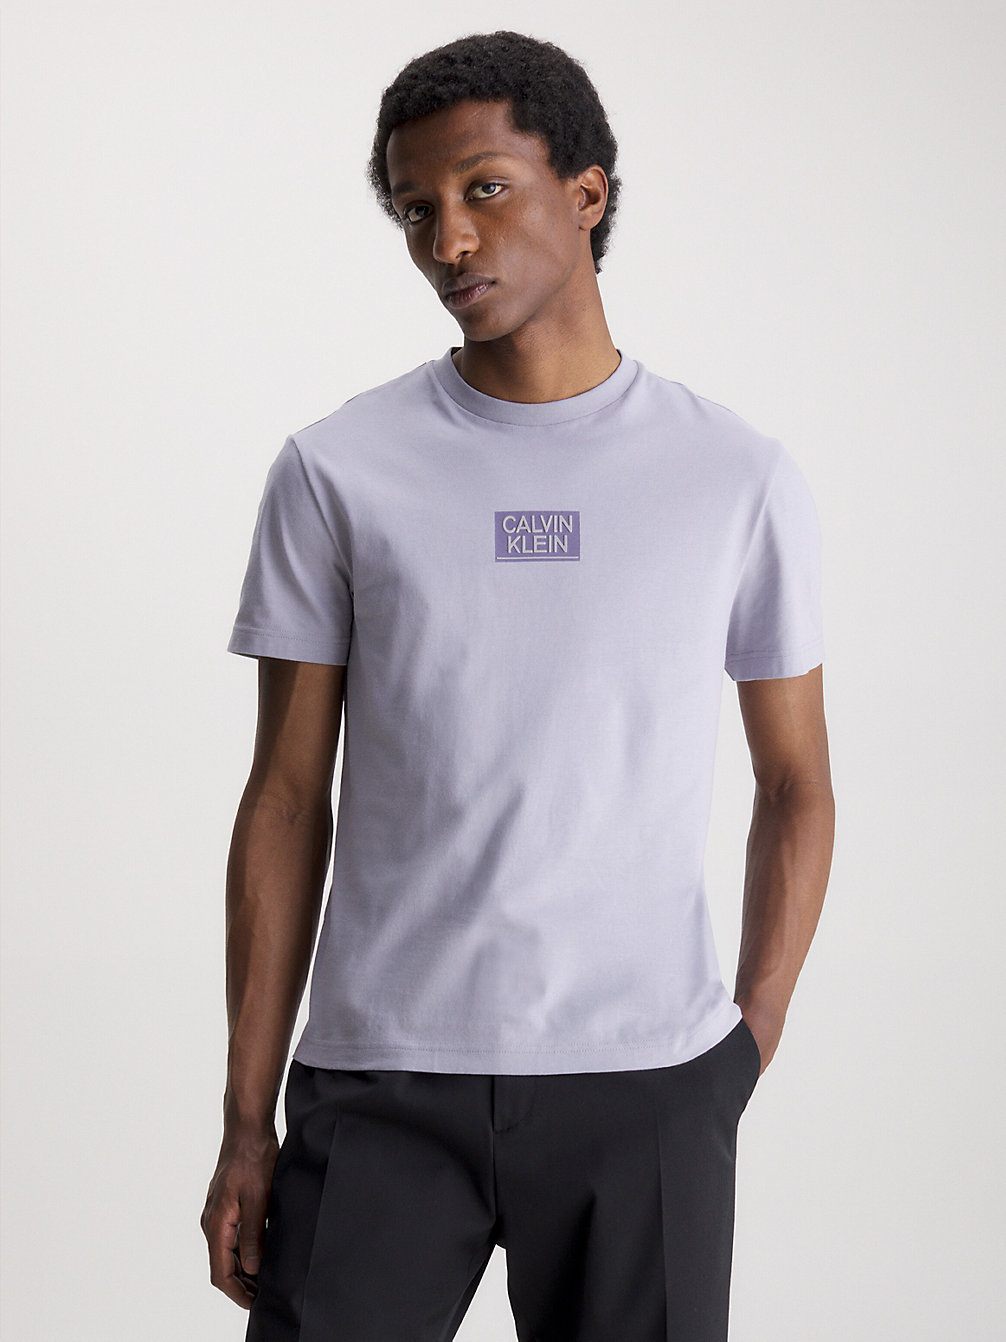 DAPPLE GRAY Logo-T-Shirt Aus Bio-Baumwolle undefined Herren Calvin Klein